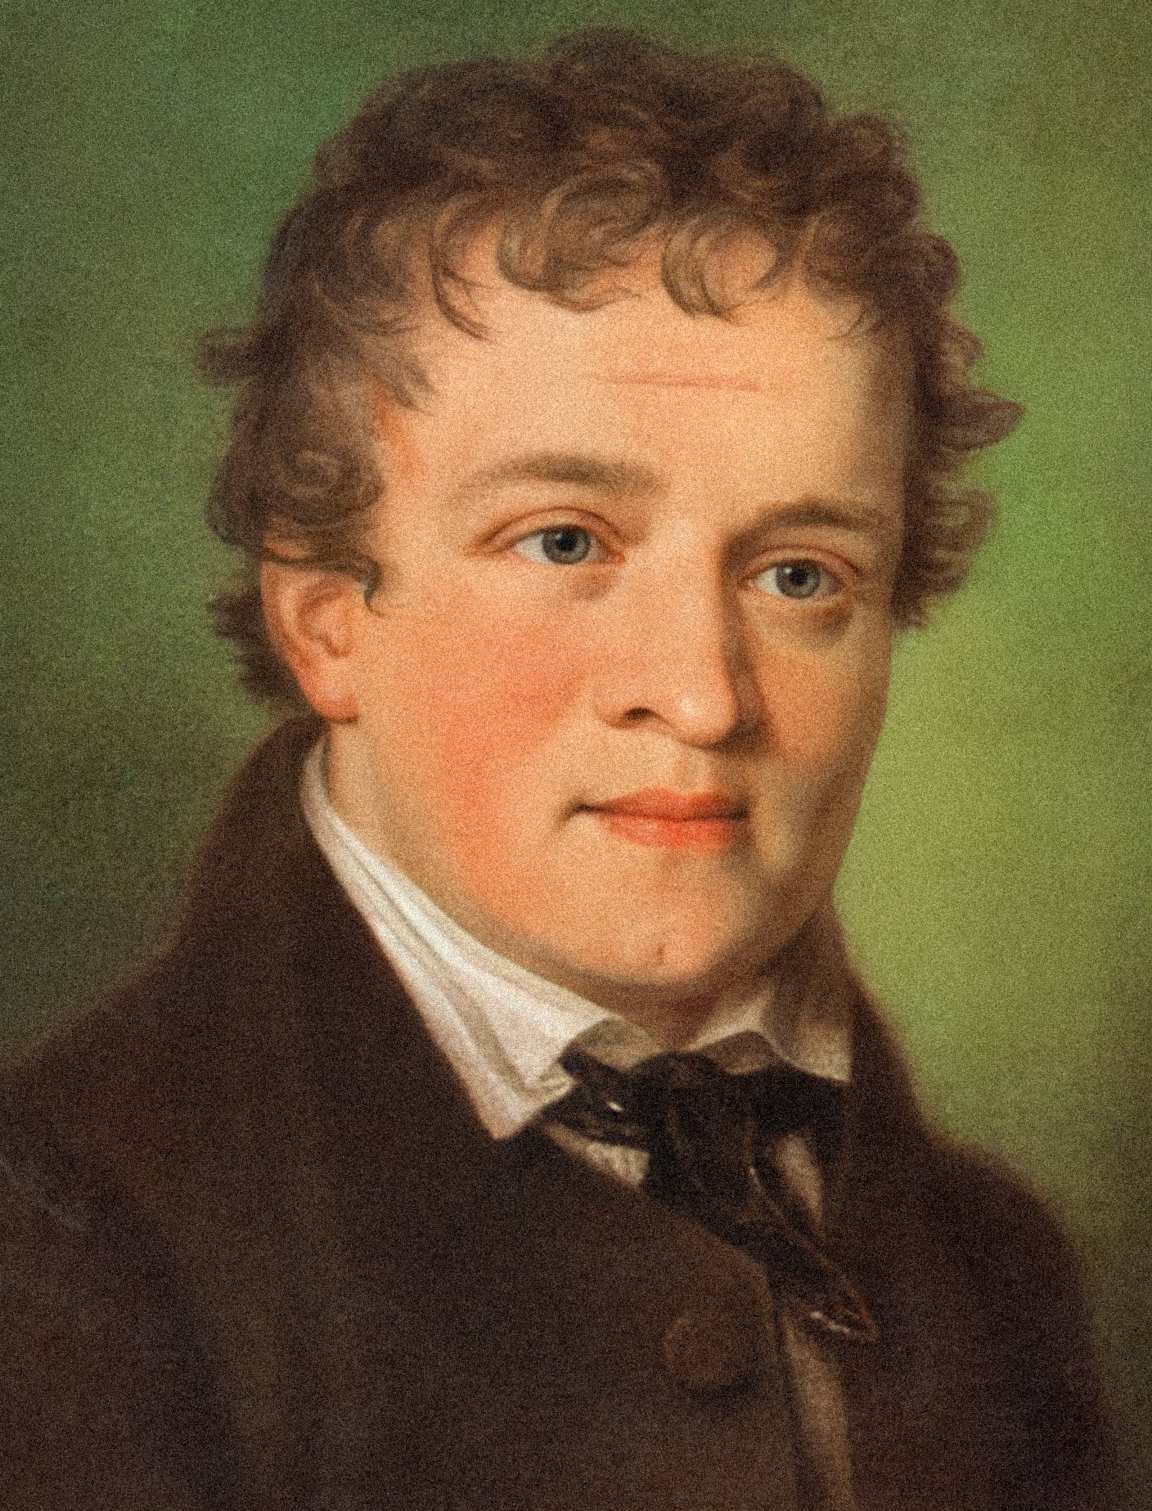 Kaspar Hauser: 1820 ගණන්වල නාඳුනන පිරිමි ළමයා අභිරහස් ලෙස ඝාතනය කරනු ලැබුවේ වසර 5 කට පසුව පමණි 2